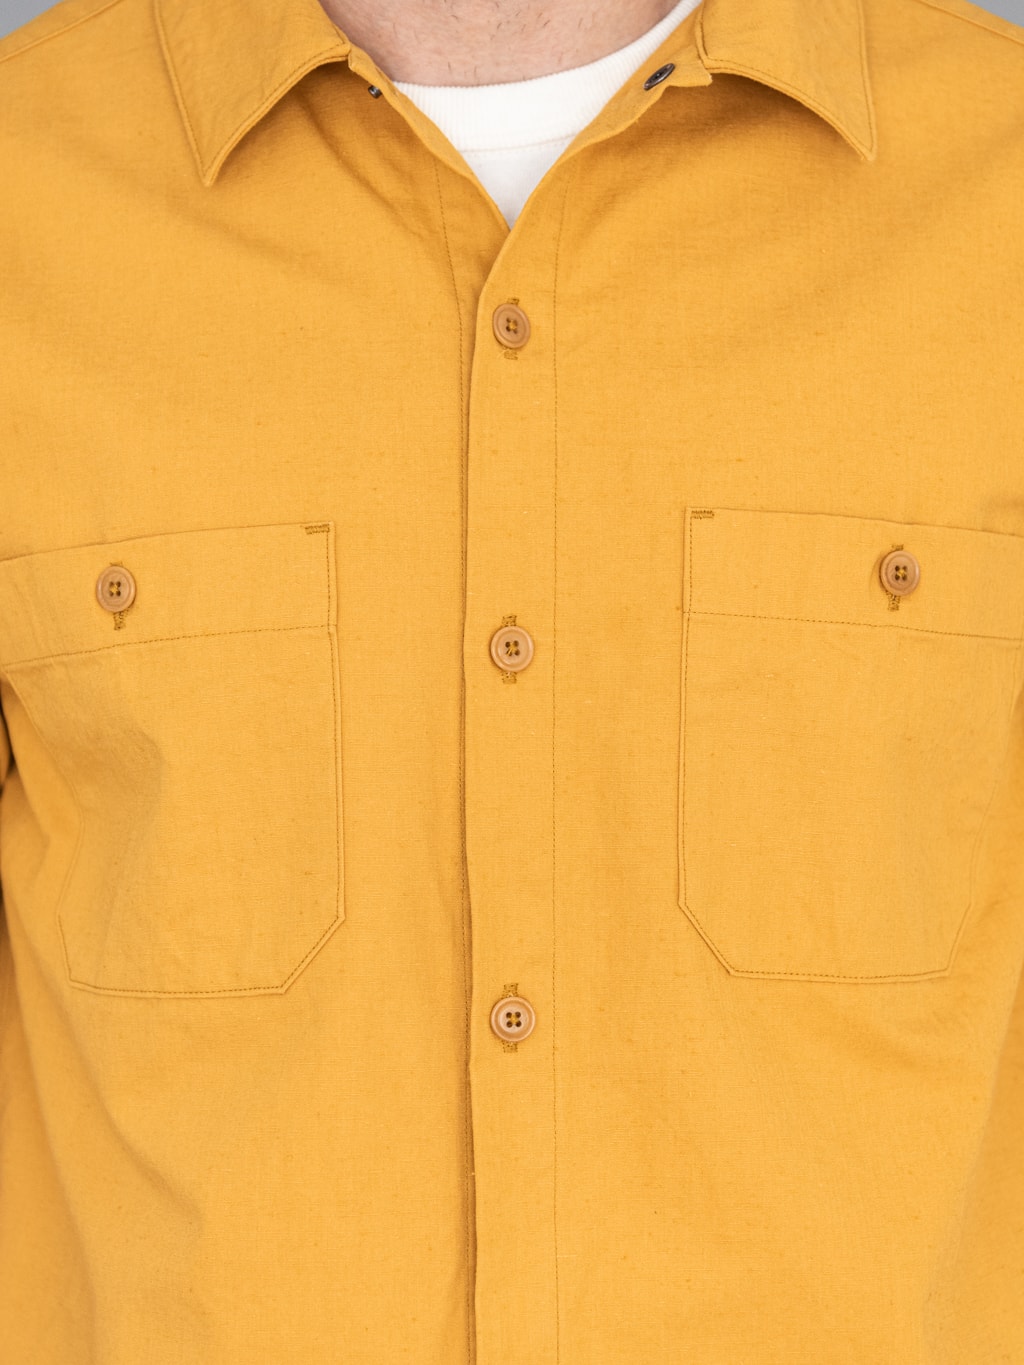 ues denim mechanic shirt sleeves shirt pumpkin yellow chest pockets